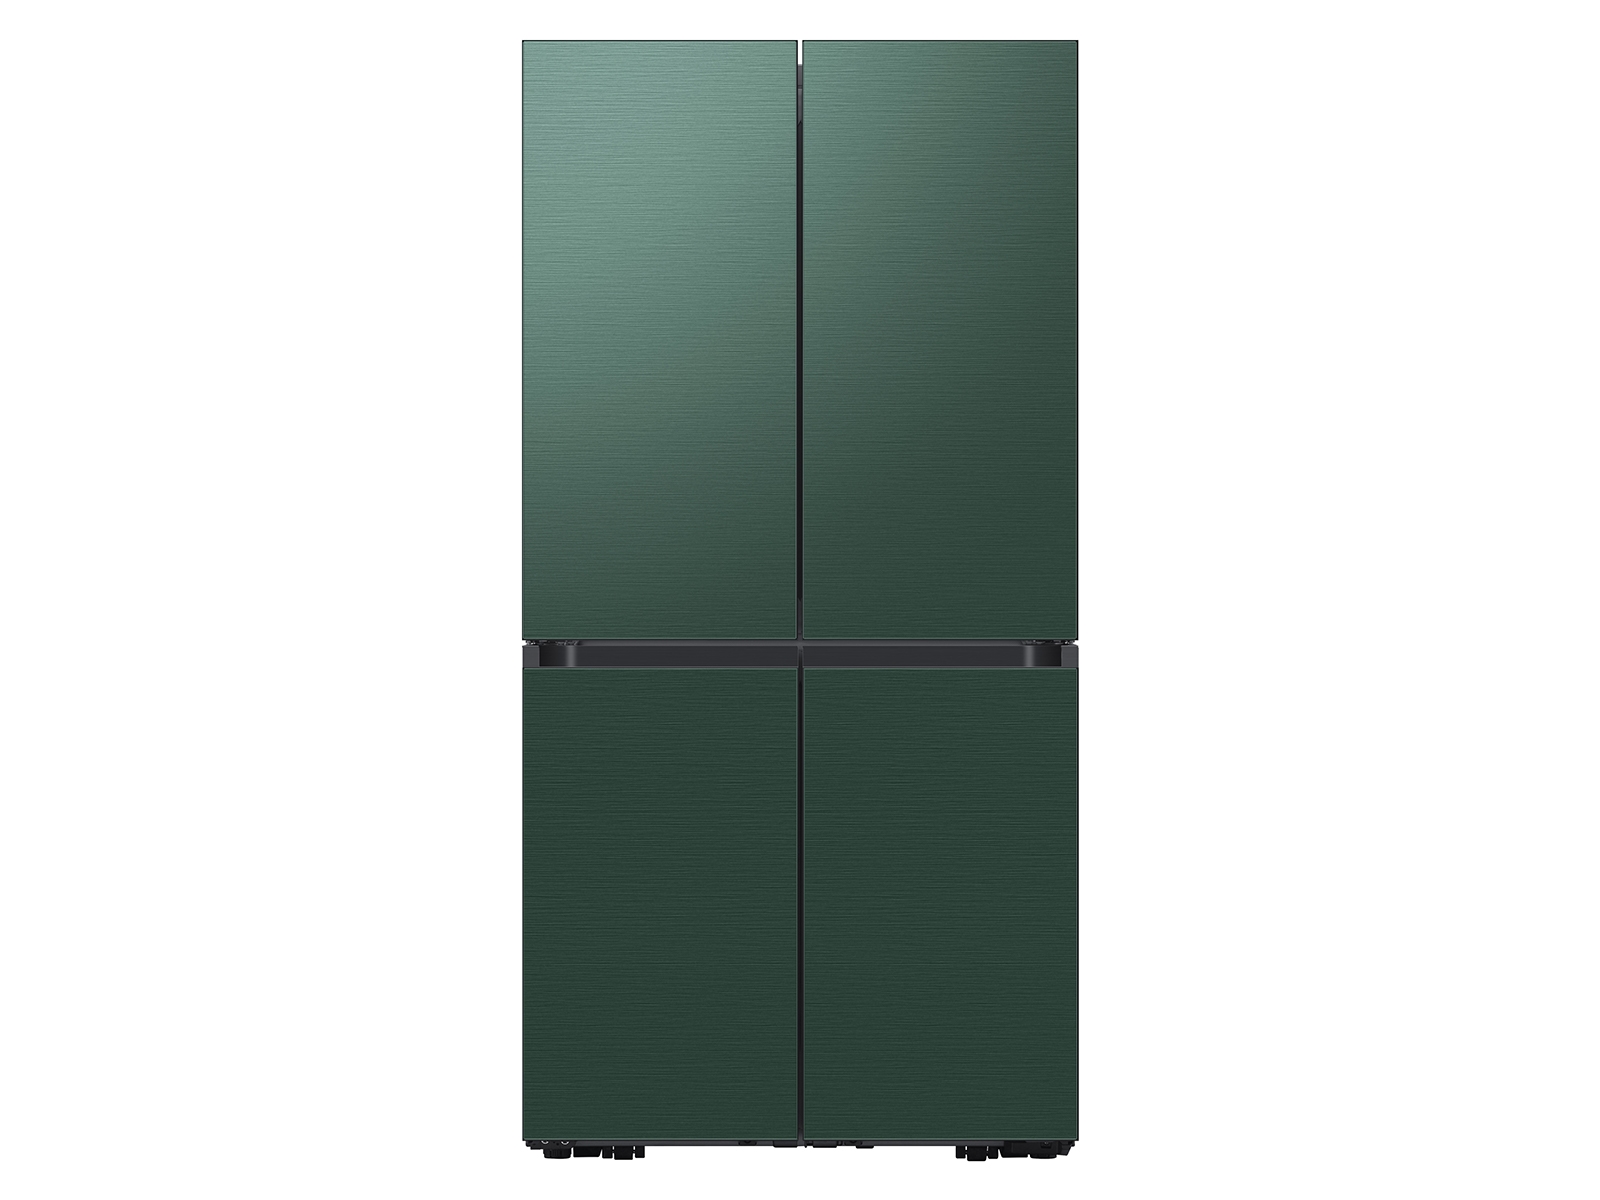 Samsung Bespoke 4-Door Flex™ Refrigerator (29 cu. ft.) in Emerald Green Steel(BNDL-1664307463194)